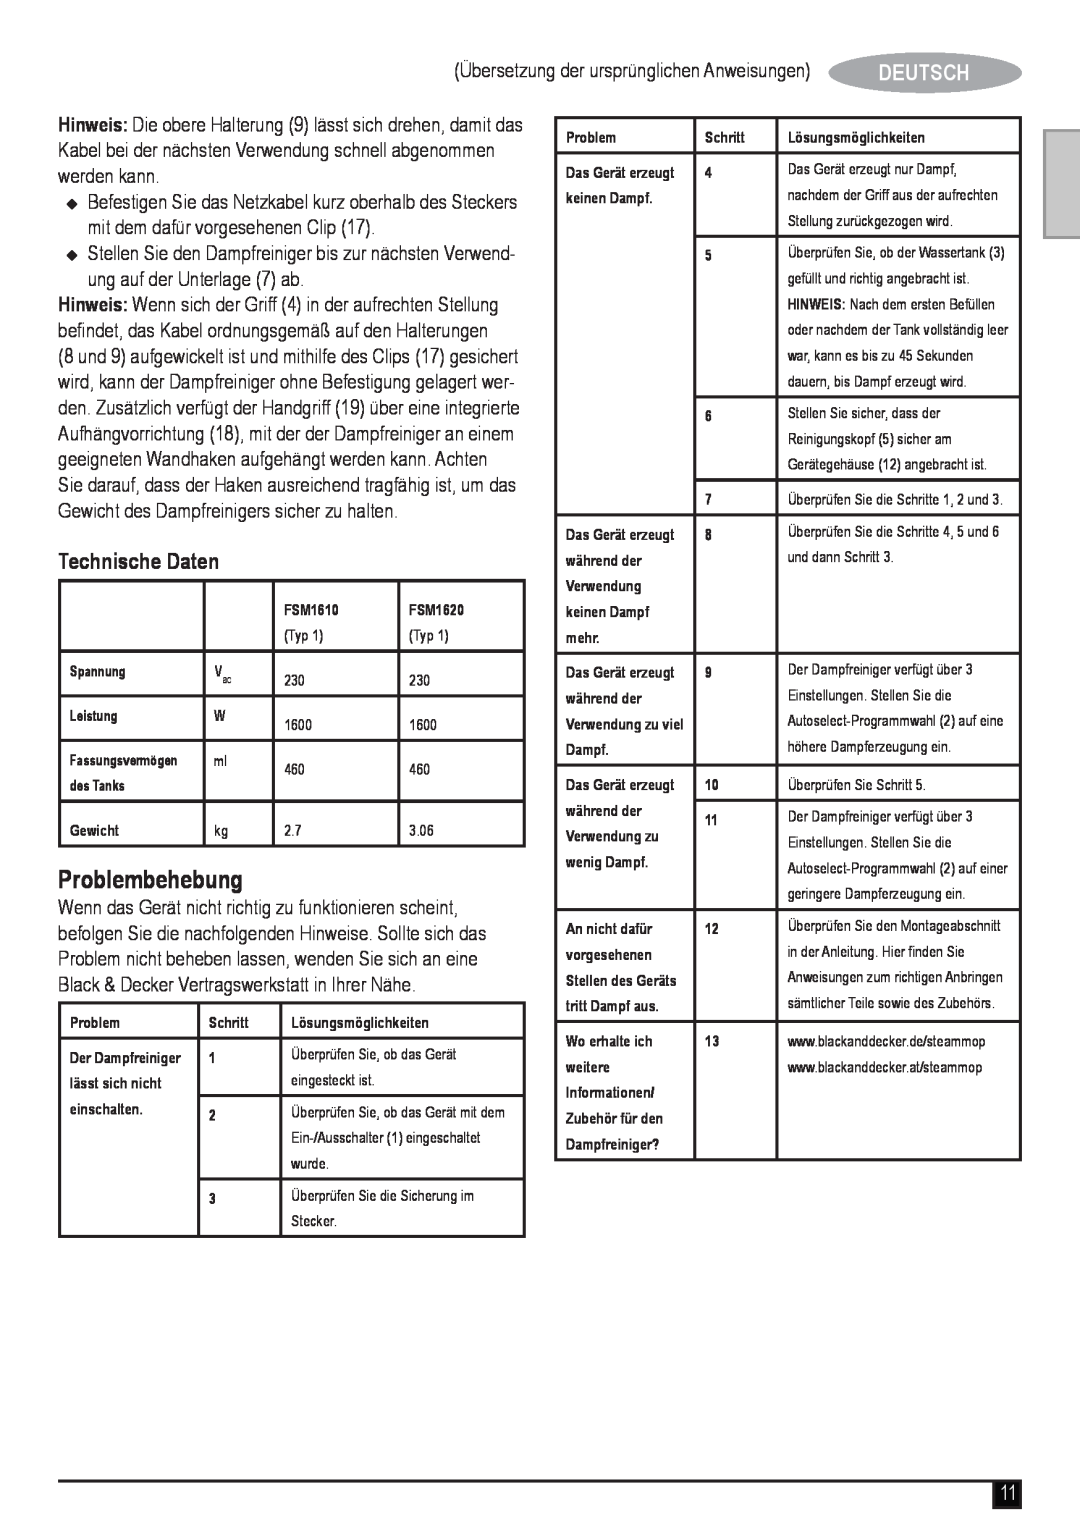 Black & Decker FSM1620 manual Problembehebung, Technische Daten, Deutsch 